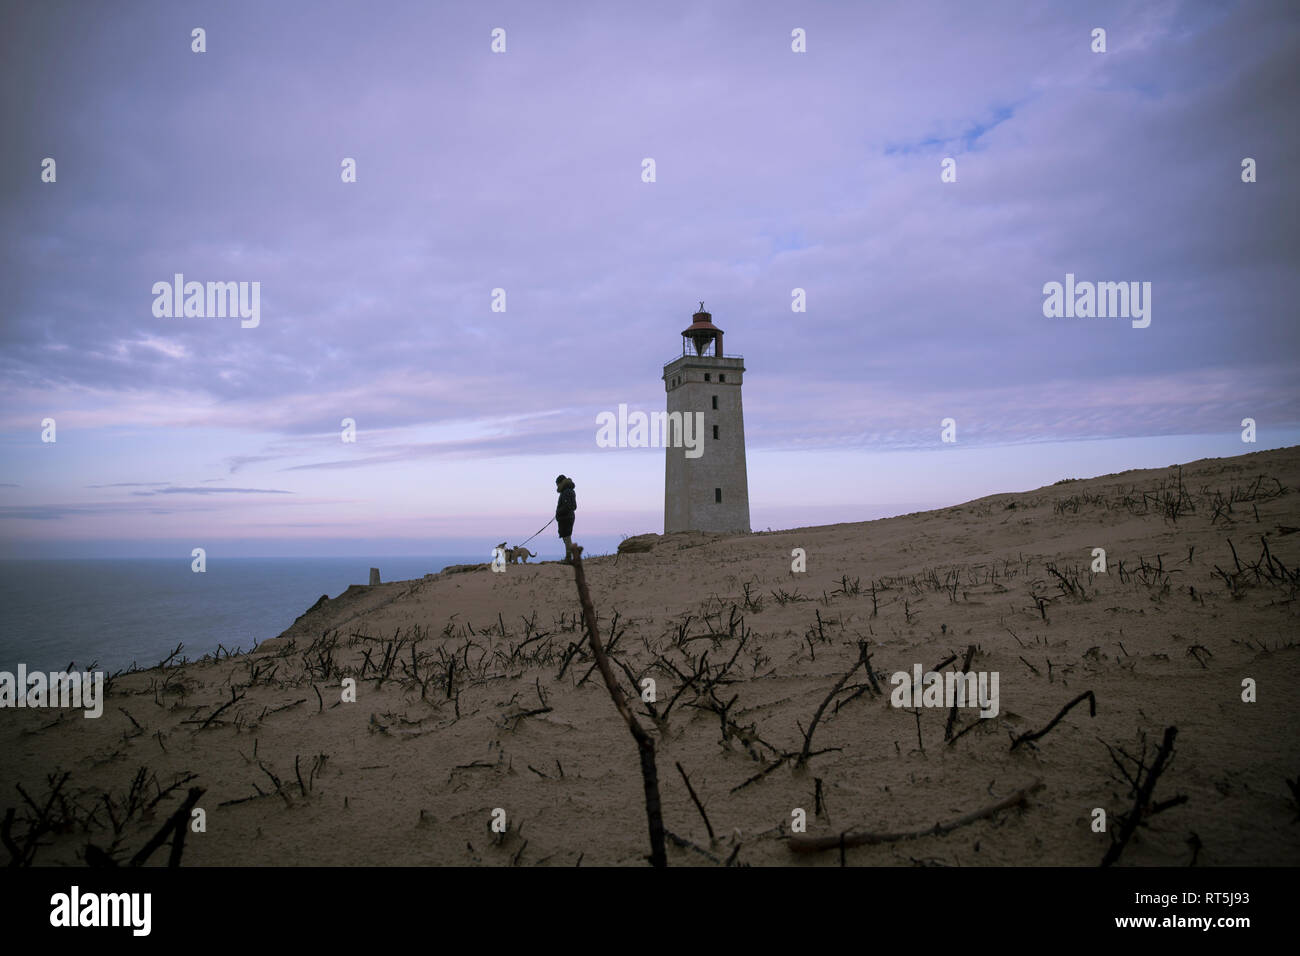 Le Danemark, le Nord du Jutland, man with dog looking at view près de phare de Rubjerg Knude Banque D'Images